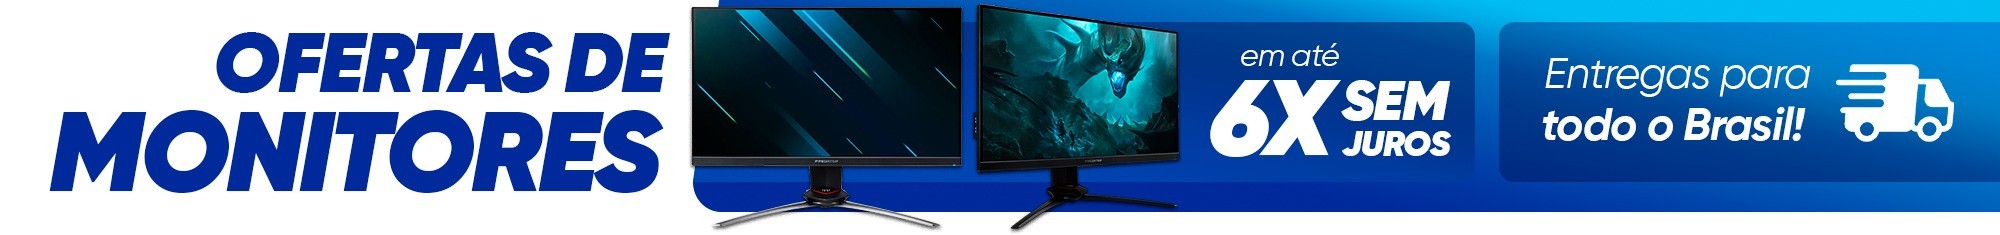 Monitor em Promoção: Gamer, LED